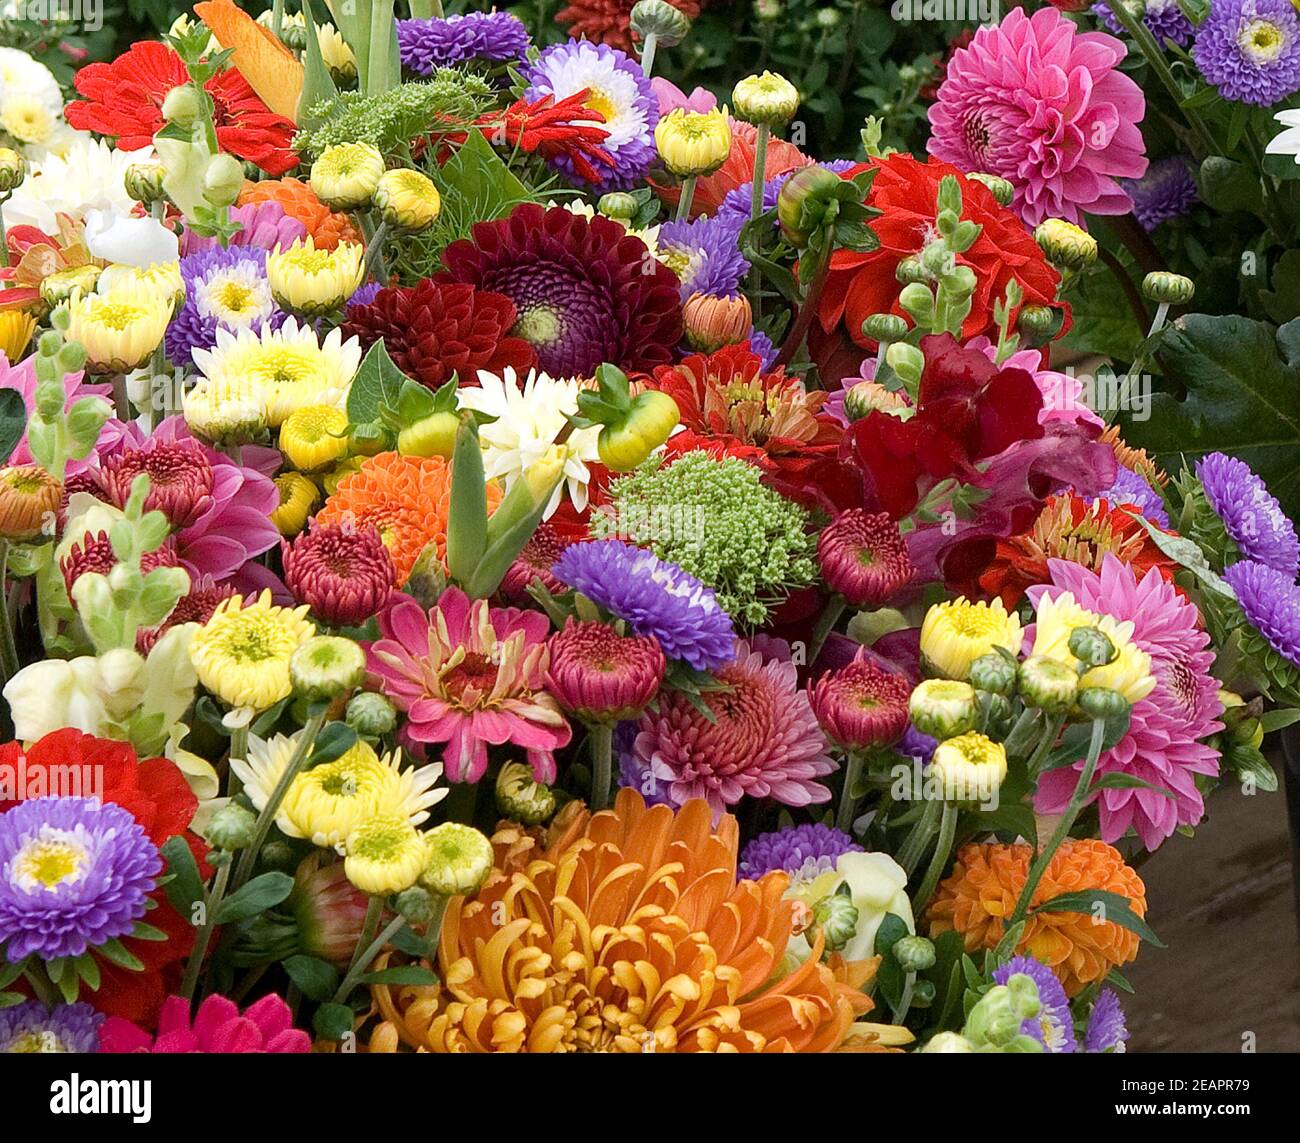 Blumenmarkt, Blumenstrauss Foto Stock